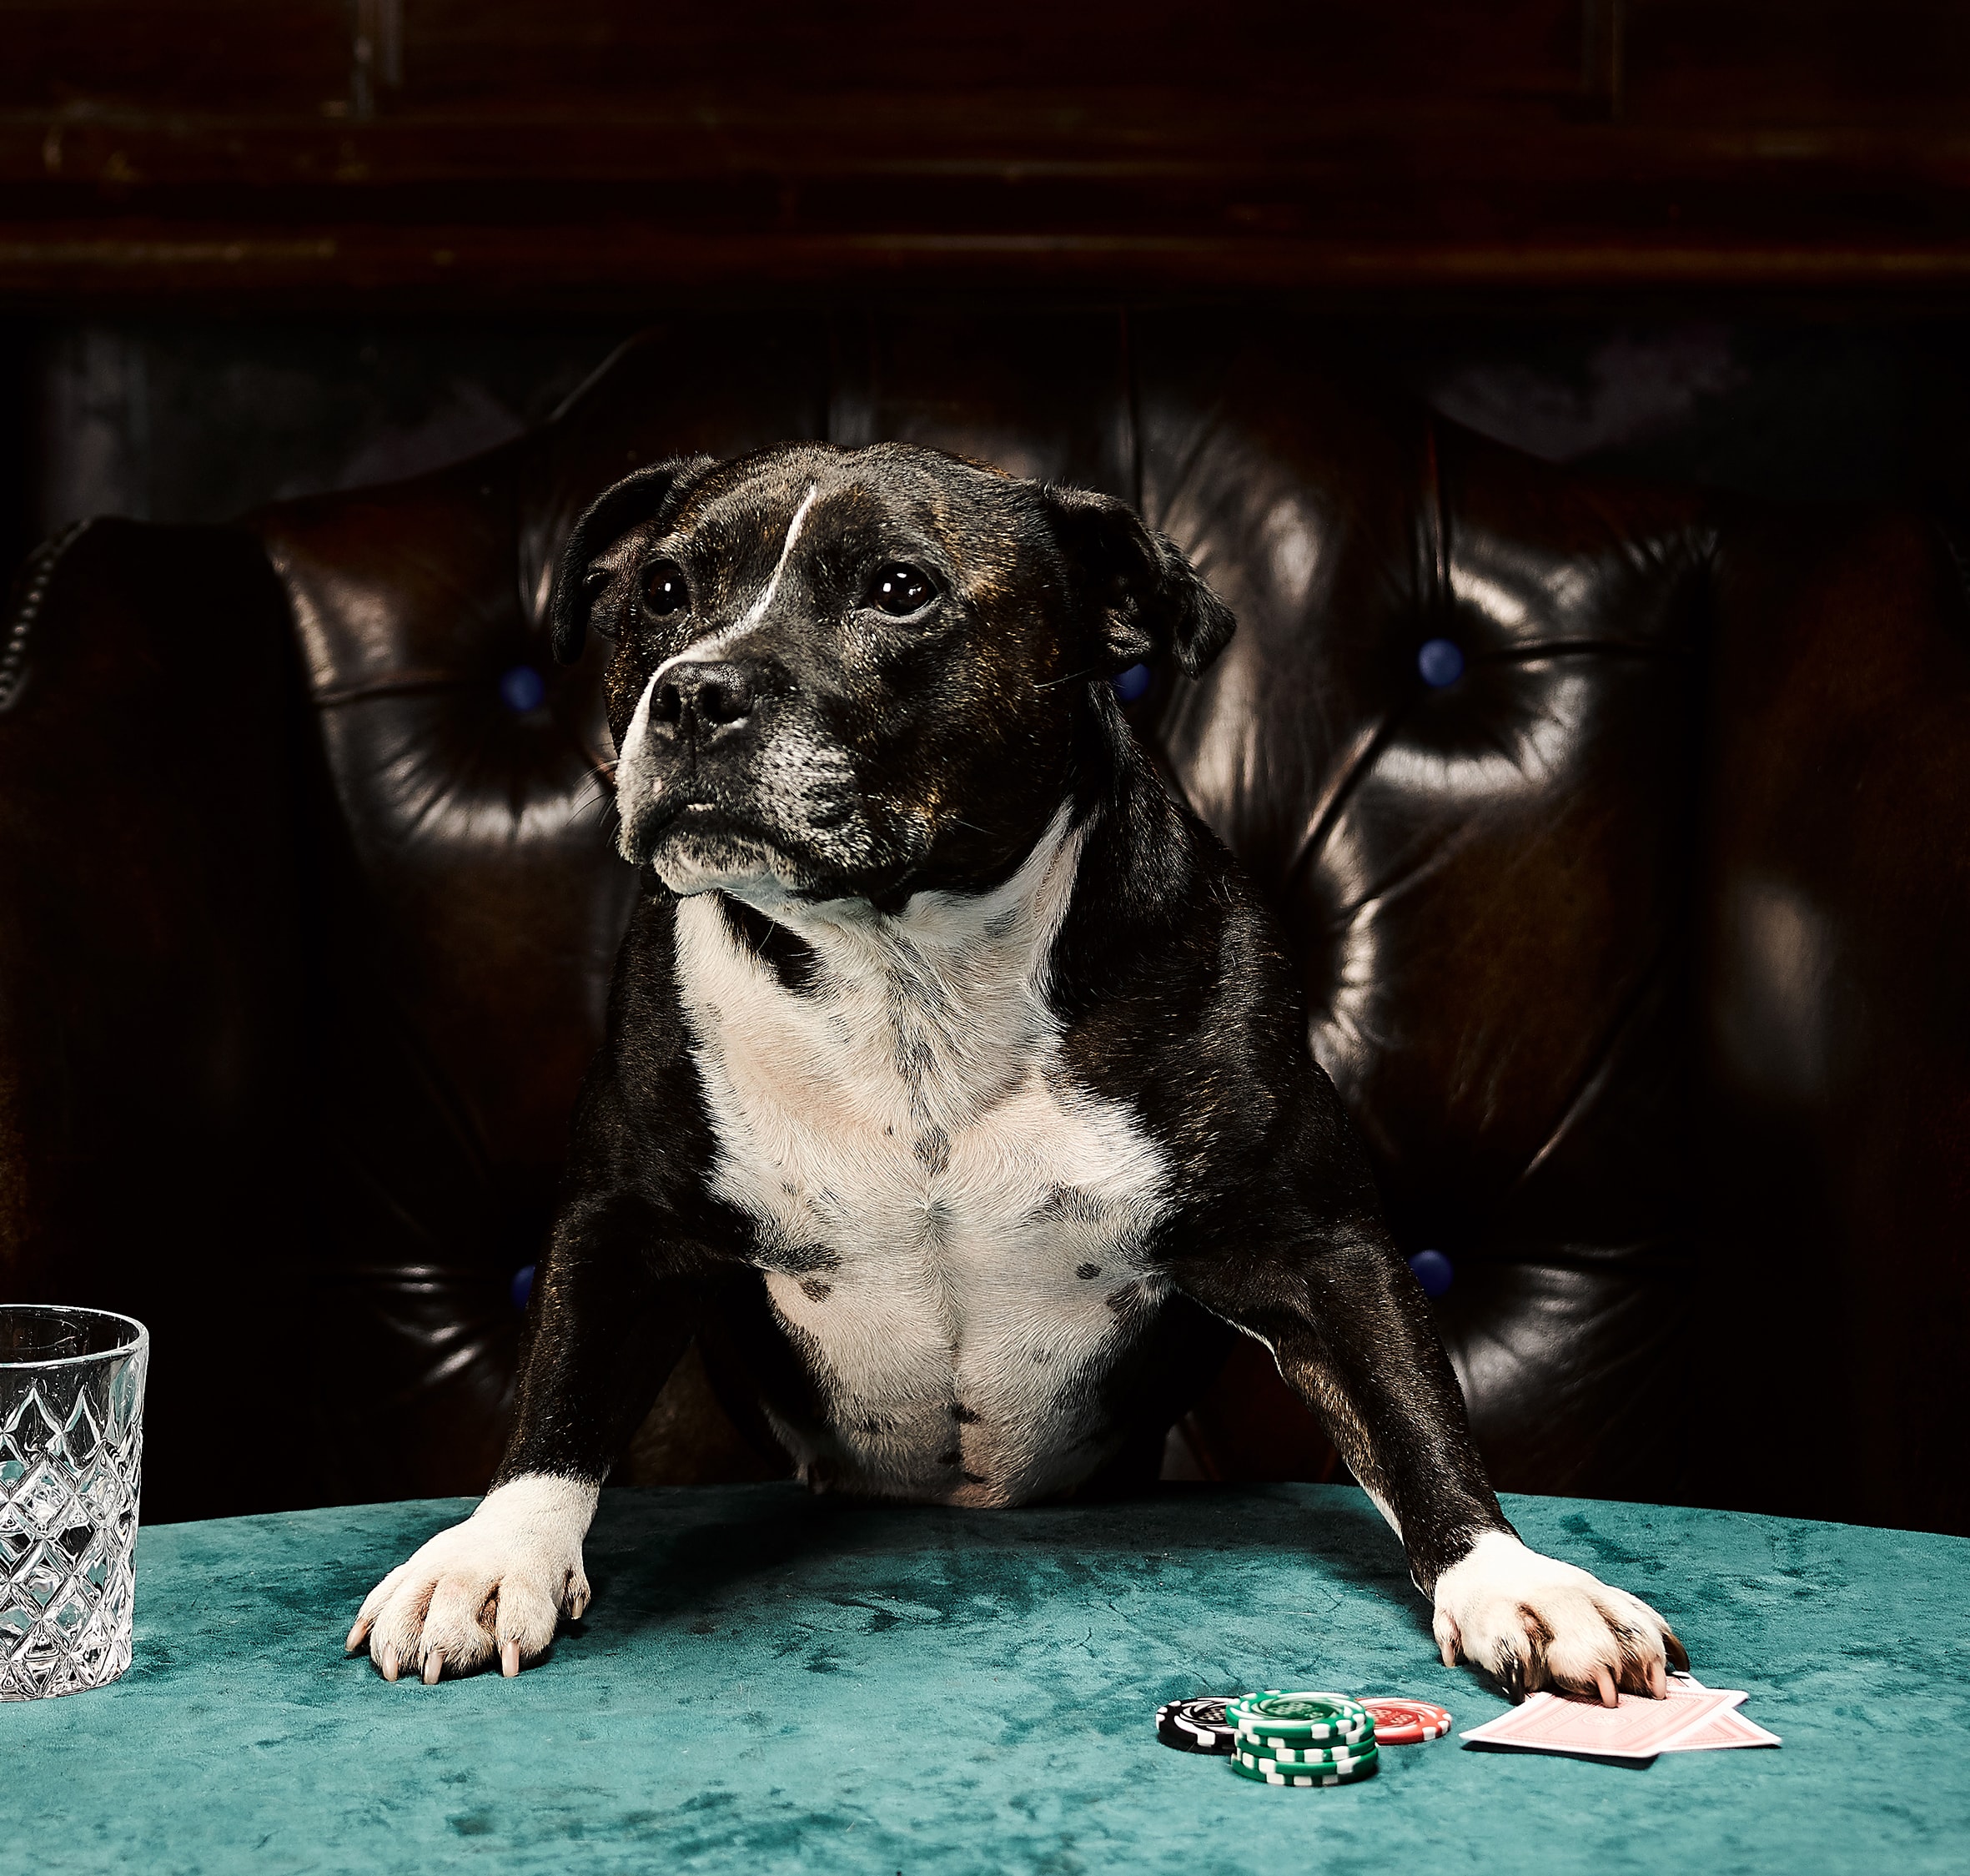 Dog playing poker